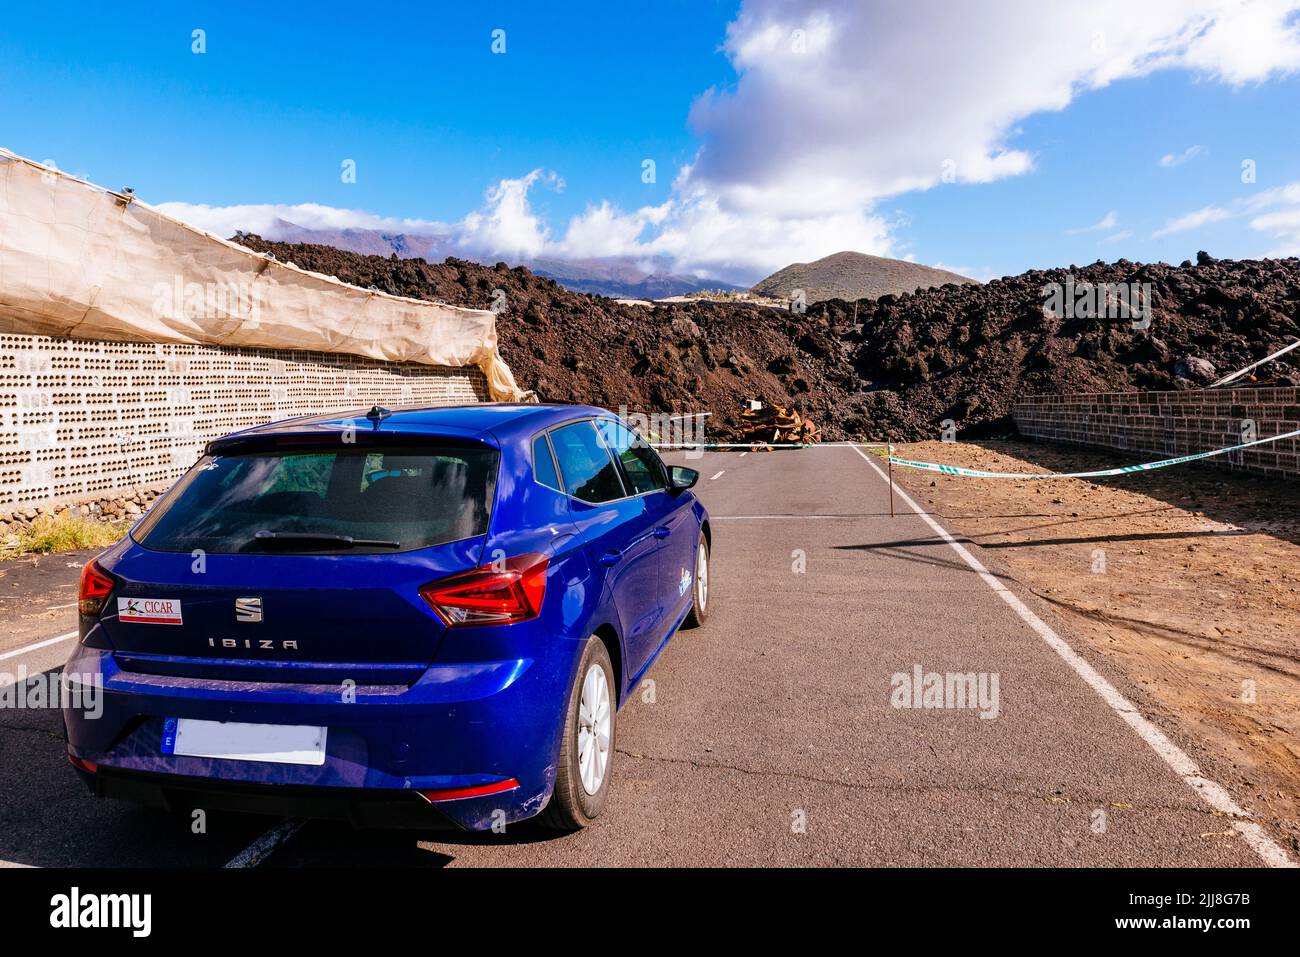 Carretera cerrada por el río de lava solidificada. Destrucción causada por el río de lava en el valle de Aridane. La Palma, Islas Canarias, España Foto de stock